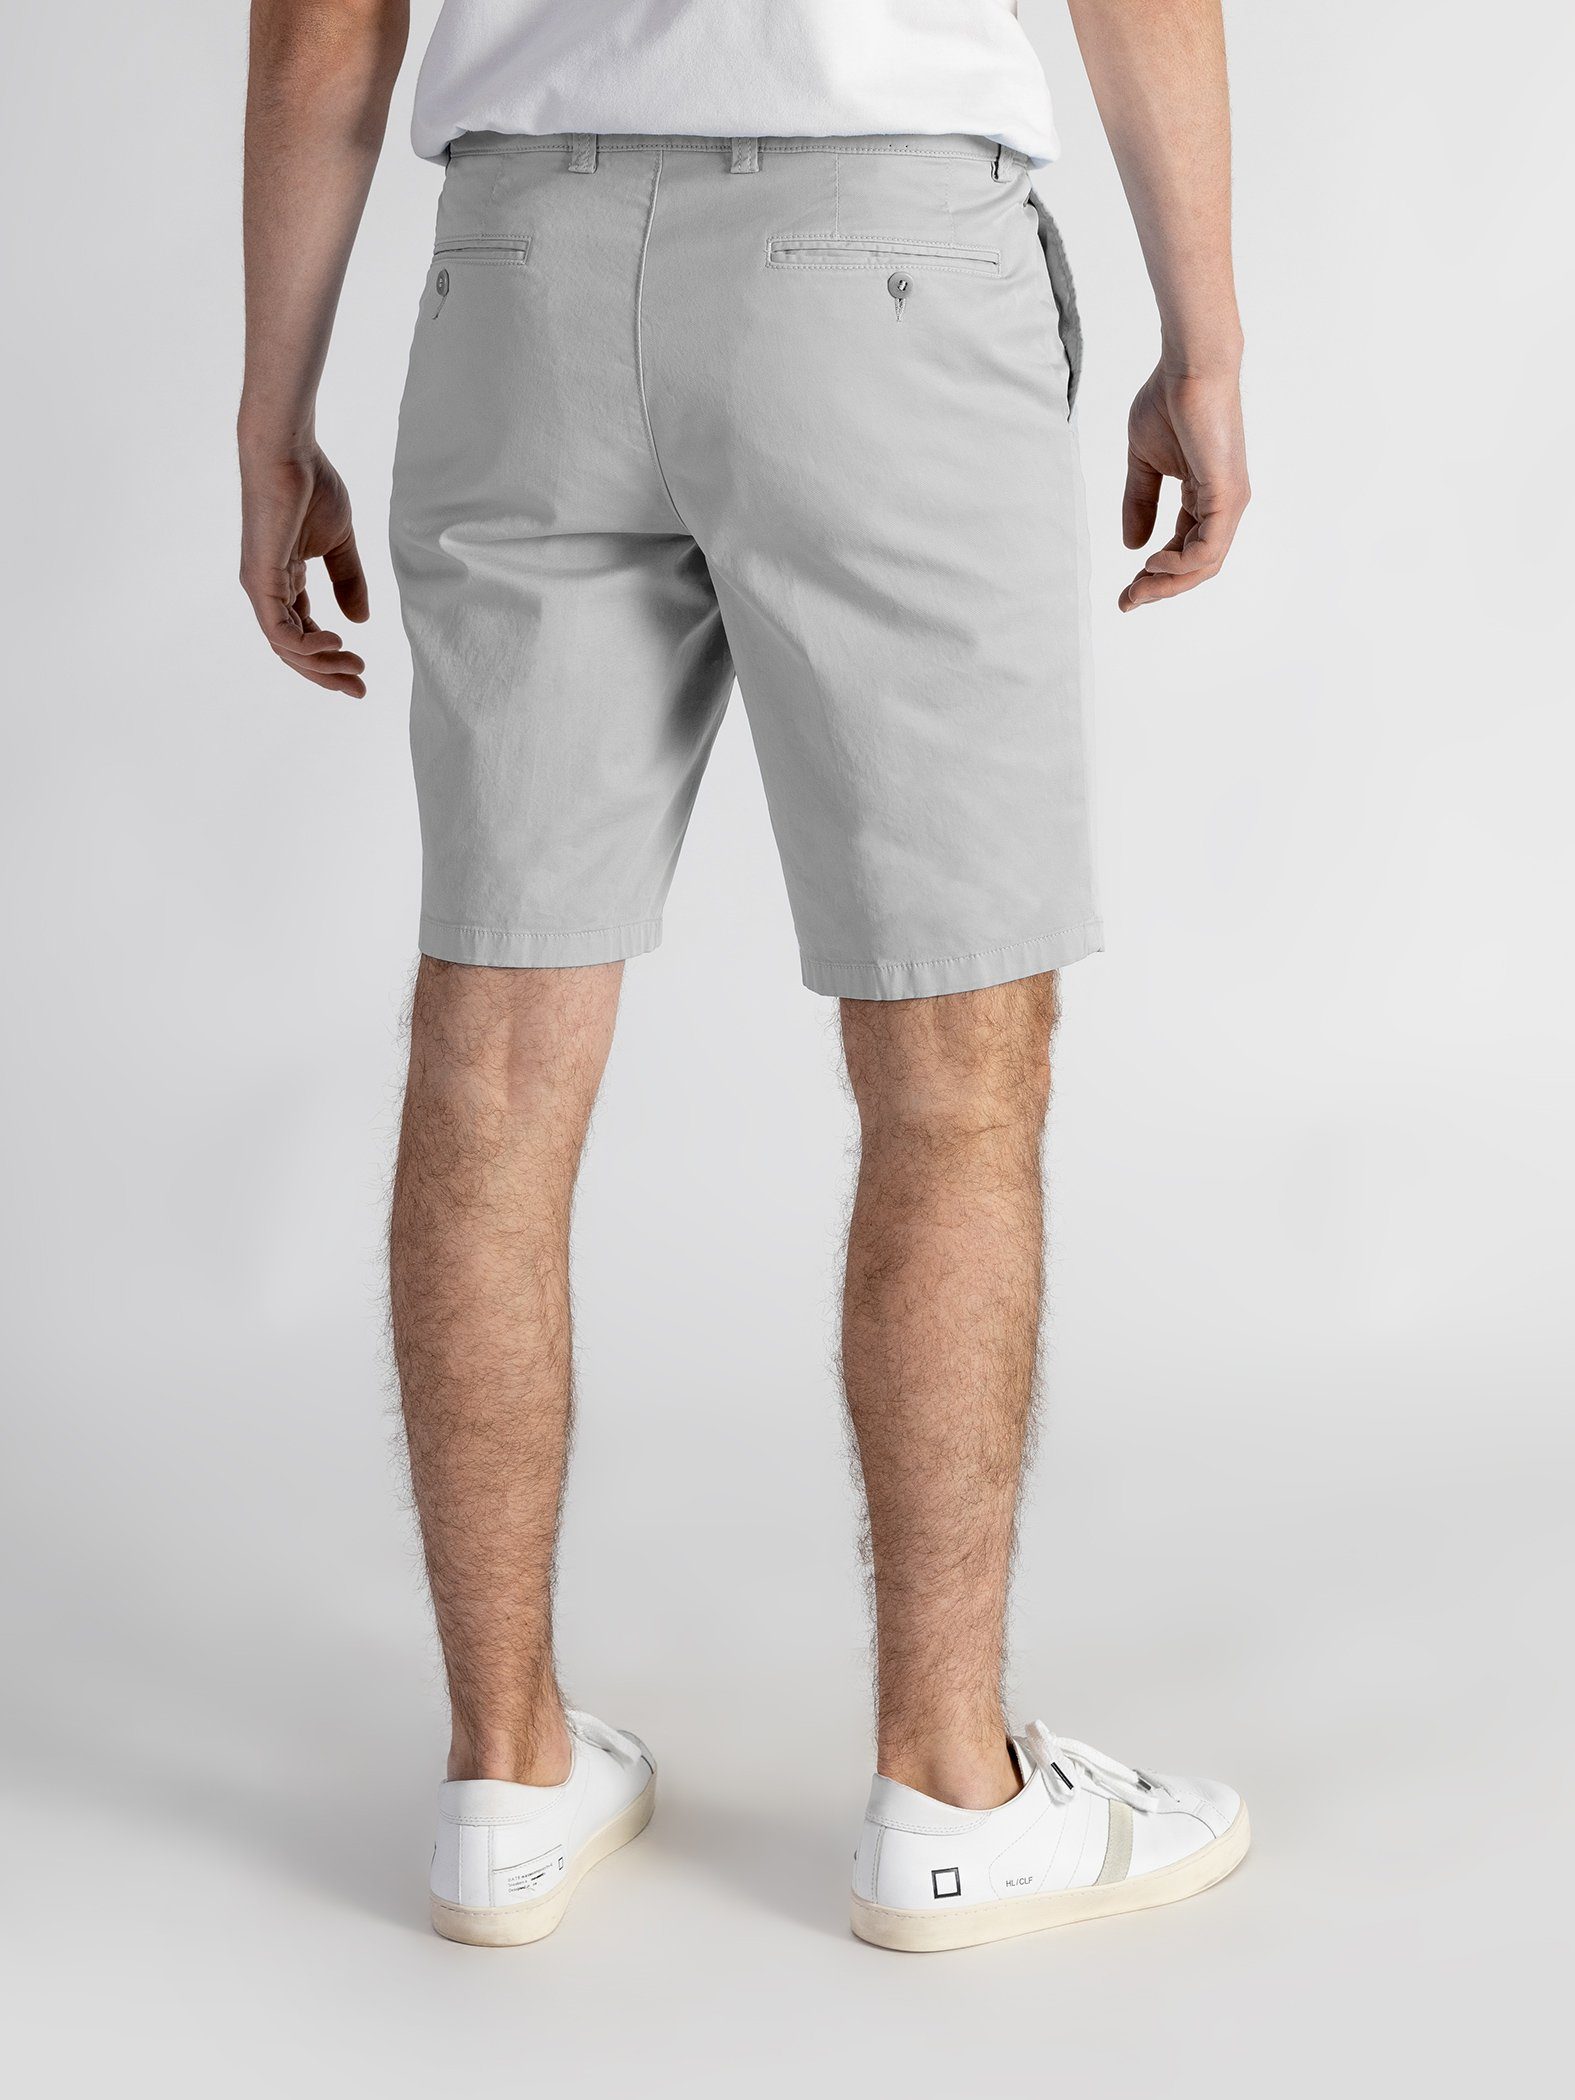 Shorts TwoMates Farbauswahl, hellgrau Bund, GOTS-zertifiziert mit Shorts elastischem